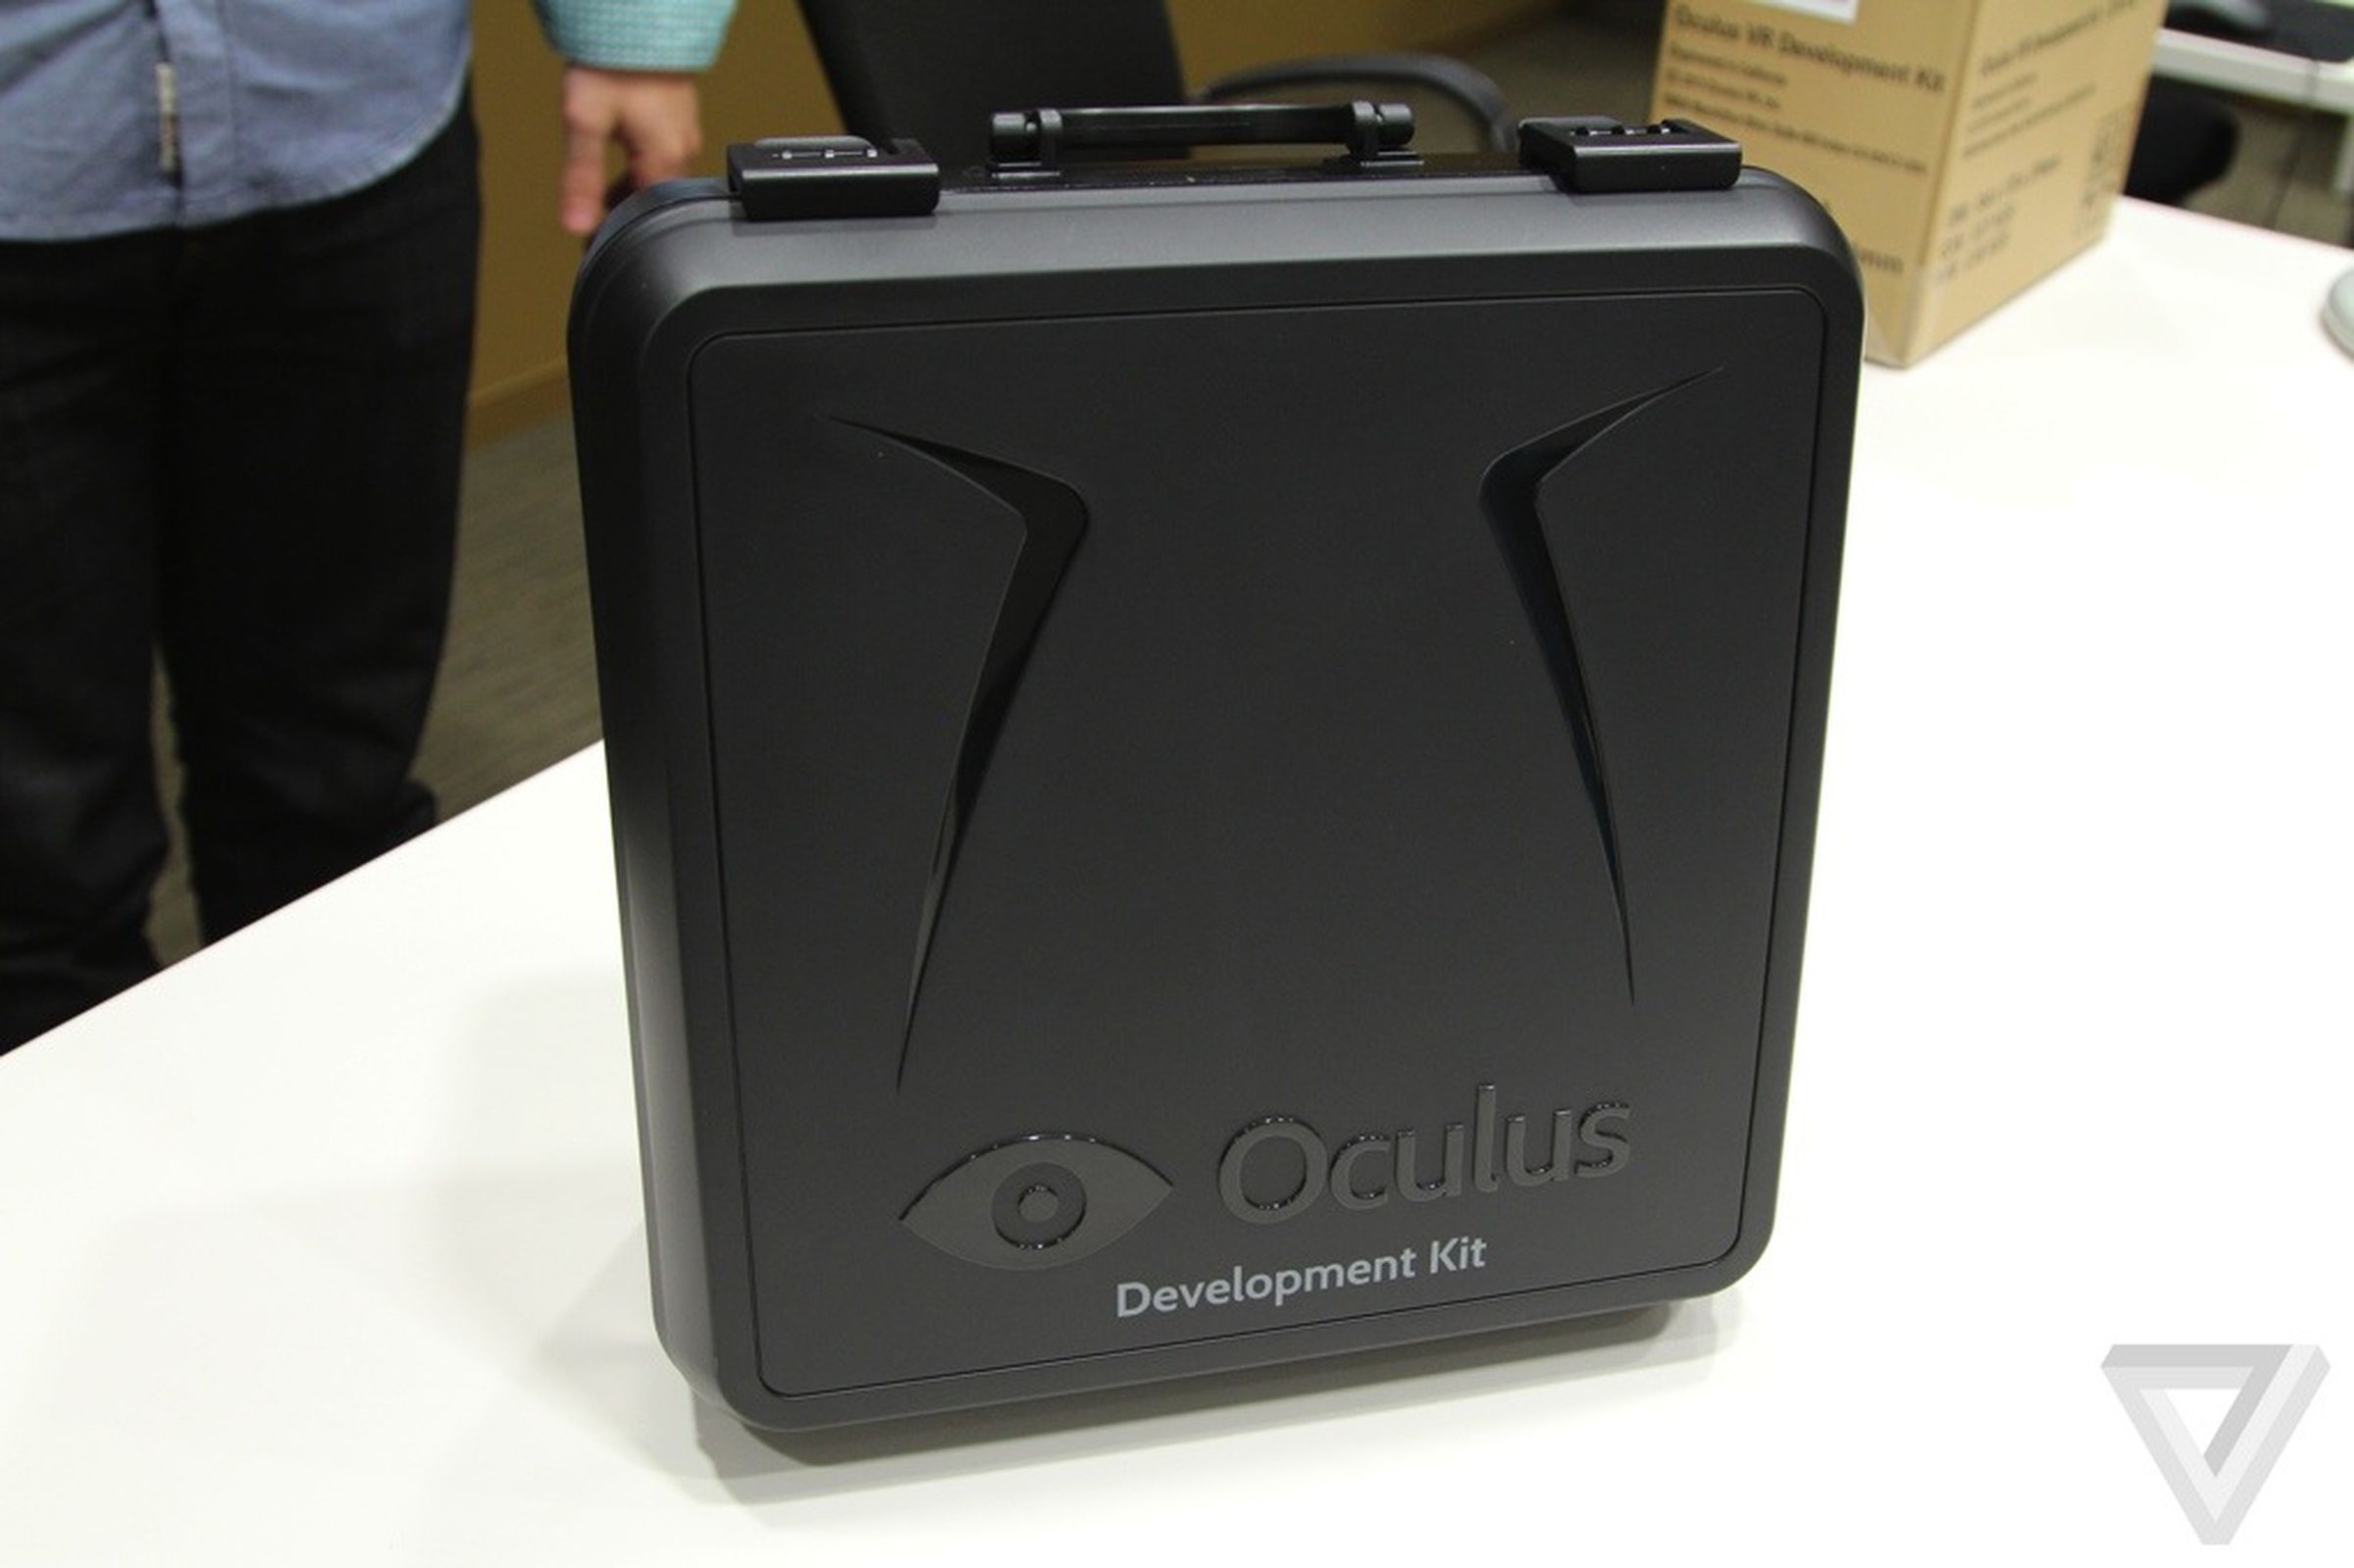 Oculus Rift Developer Kit pictures